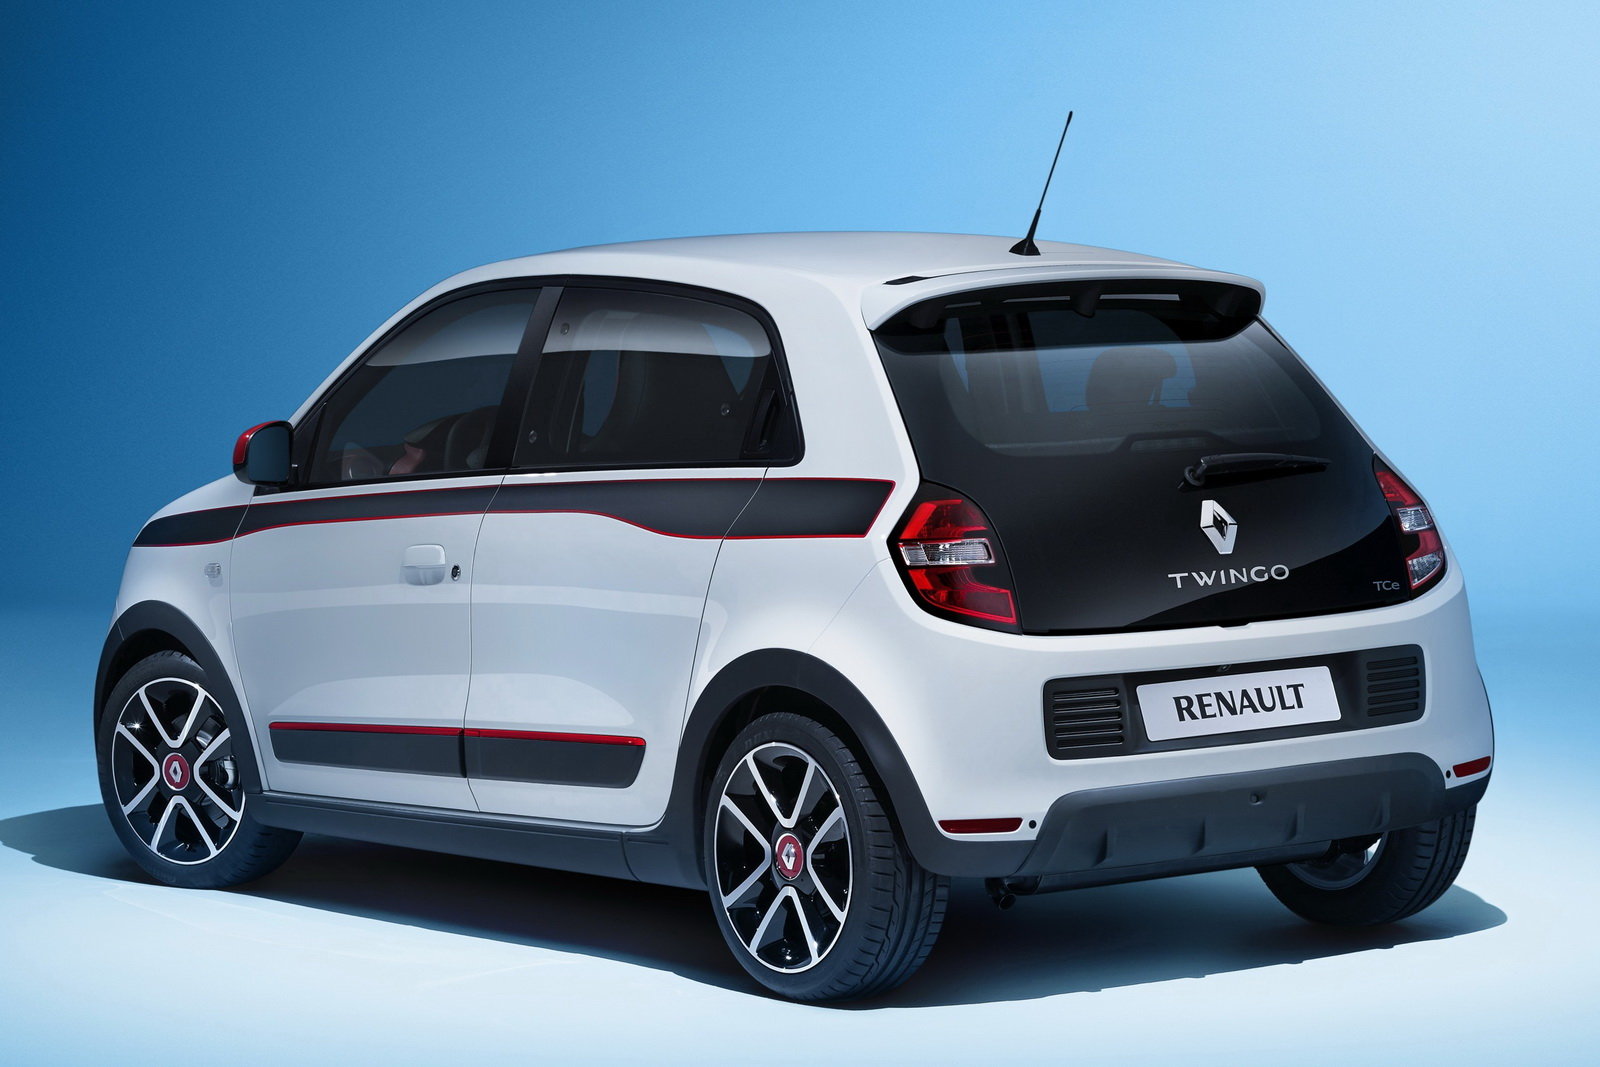 La Renault Twingo vuole battere la Panda 